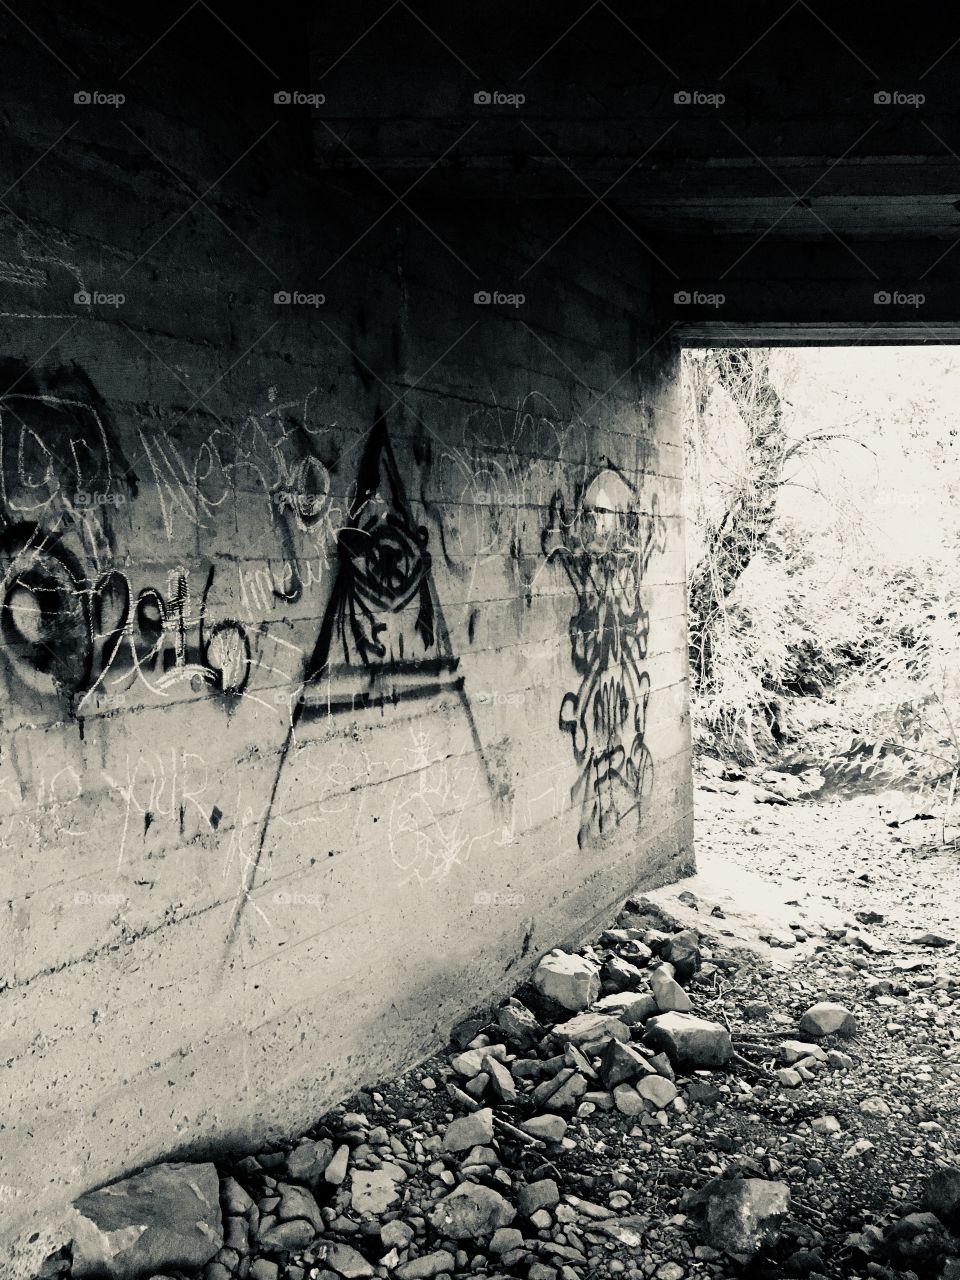 A black and white prospective of bridge graffiti 